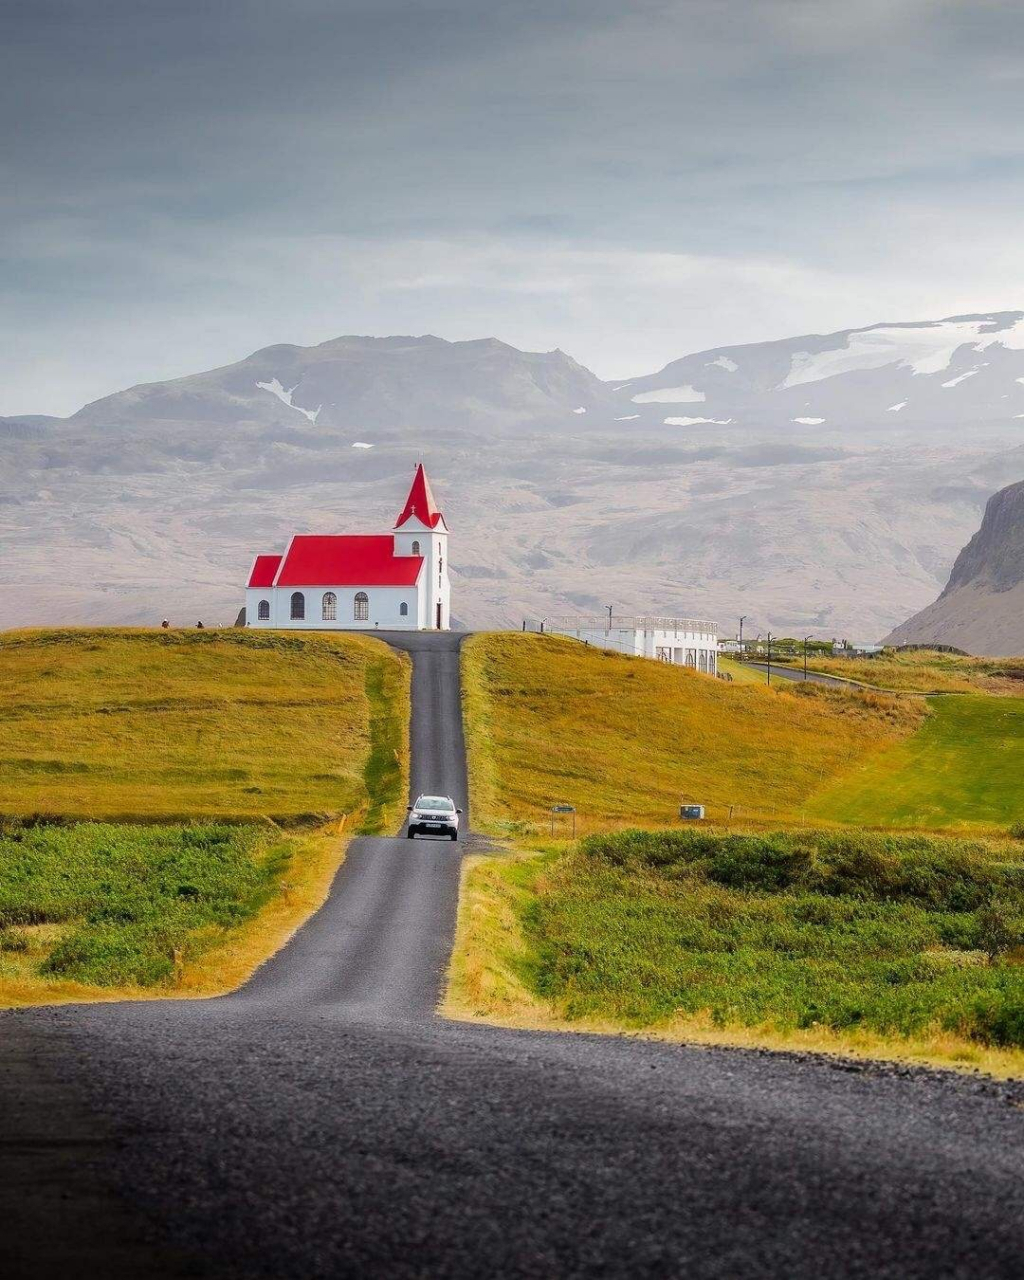 验光仪中的红房子——维克镇,位于冰岛的最南端,人口不过600人,是一个